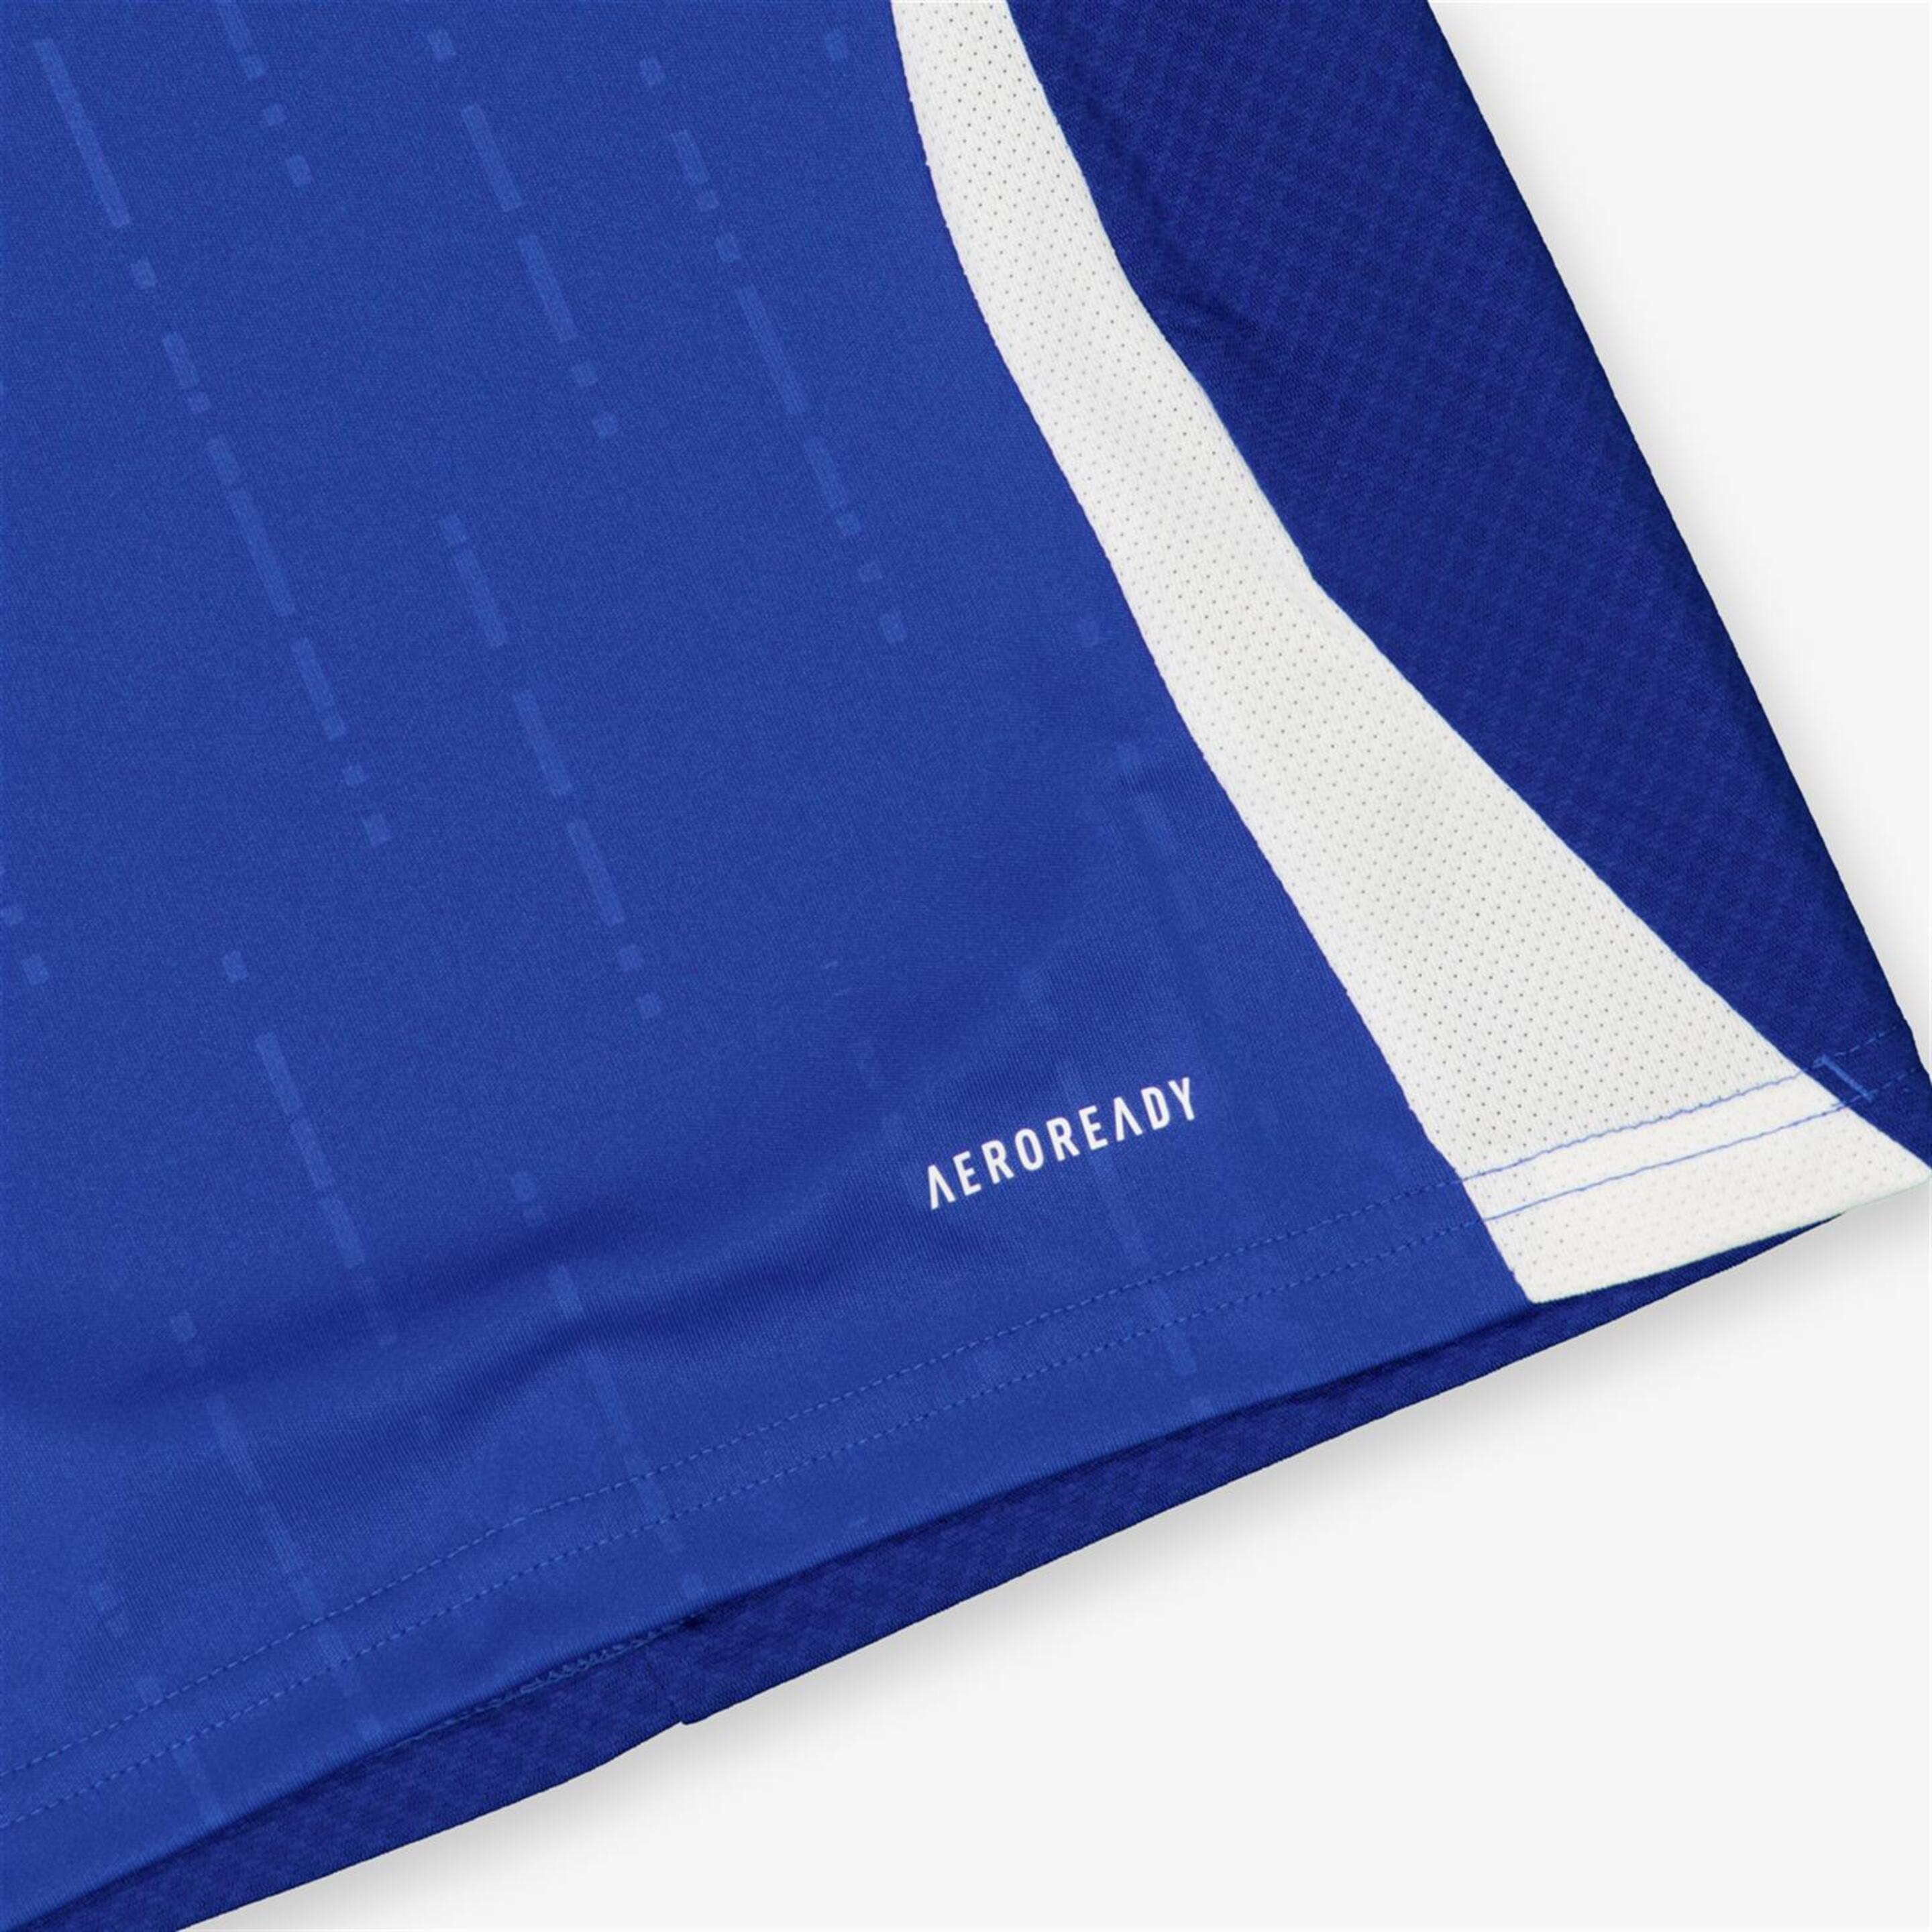 adidas Italia - Azul - Camiseta Fútbol Junior  | Sprinter